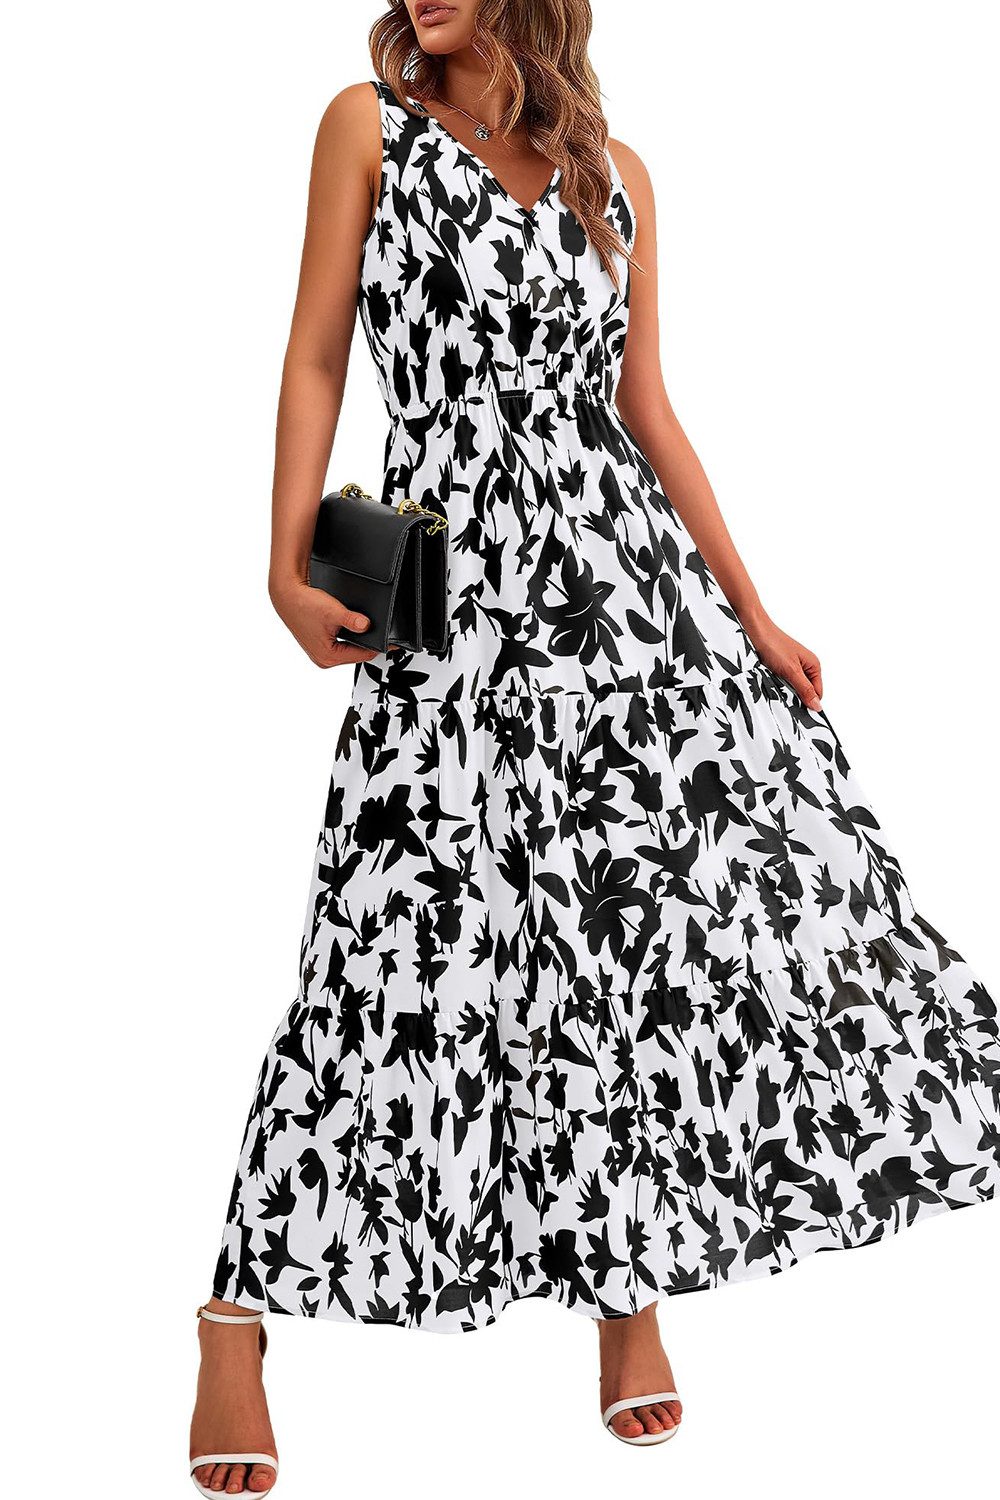 B.X Maxikleid Damen Lässiges bedrucktes, ärmelloses Sommerkleid,A-Linien-Kleid Partykleid,Süßes langes Kleid mit Blumenmuster für Hochzeitsgäste